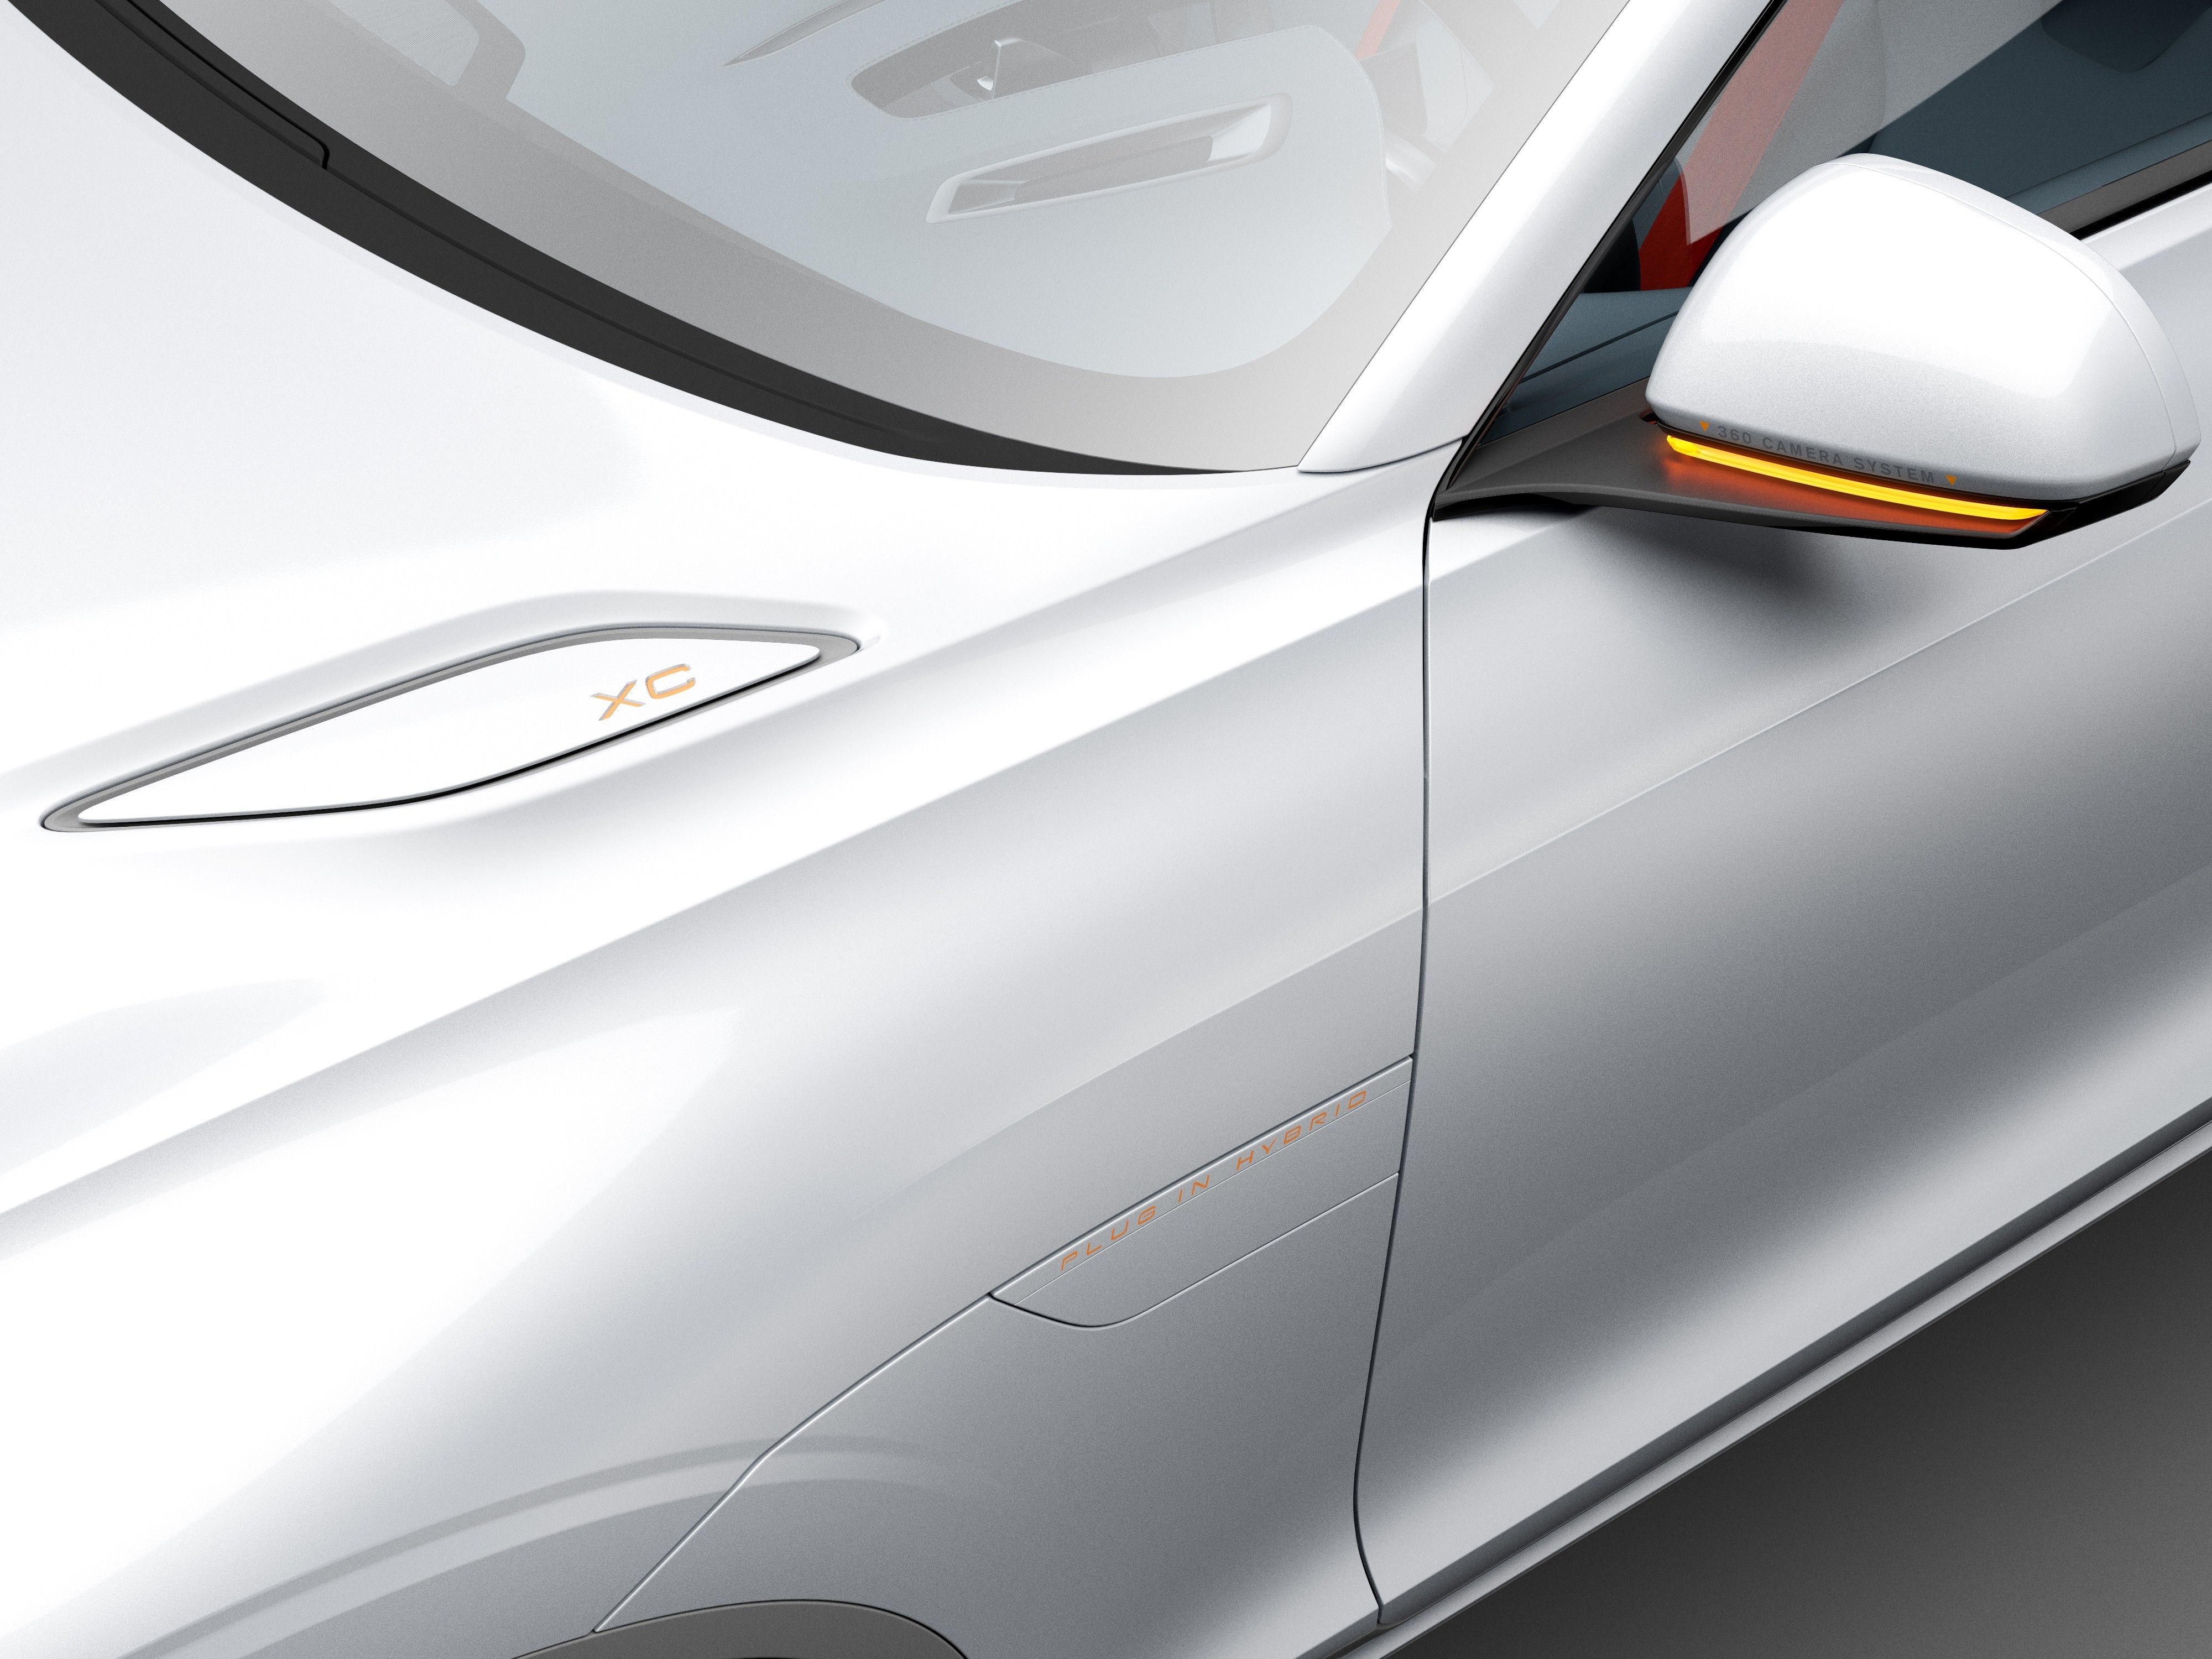 2014 Volvo Concept XC Coupe